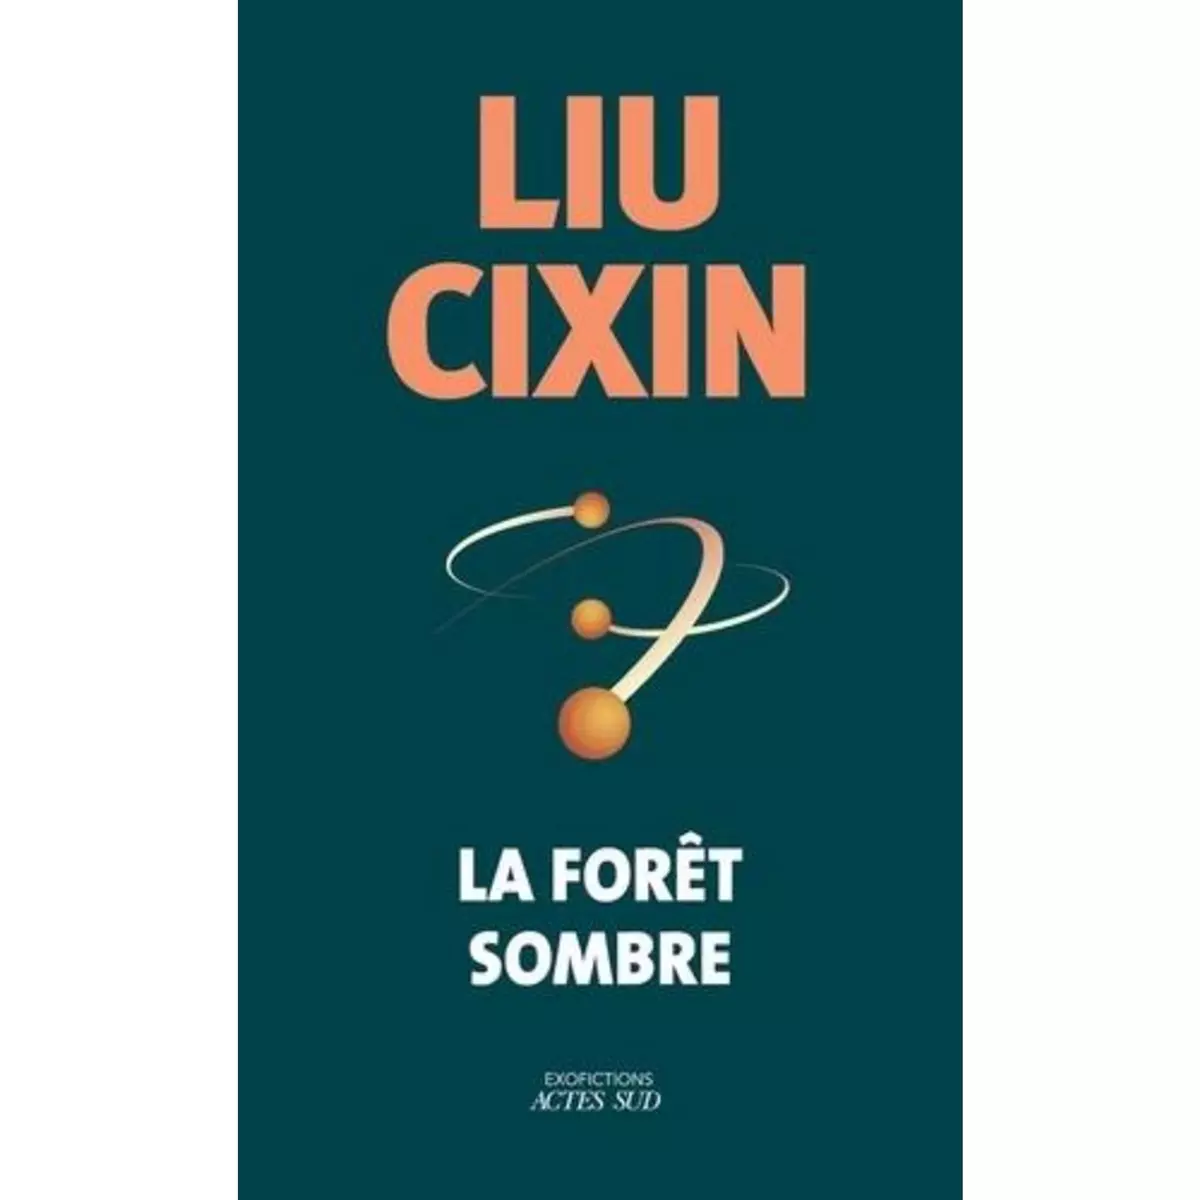  LA FORET SOMBRE. EDITION COLLECTOR, Liu Cixin